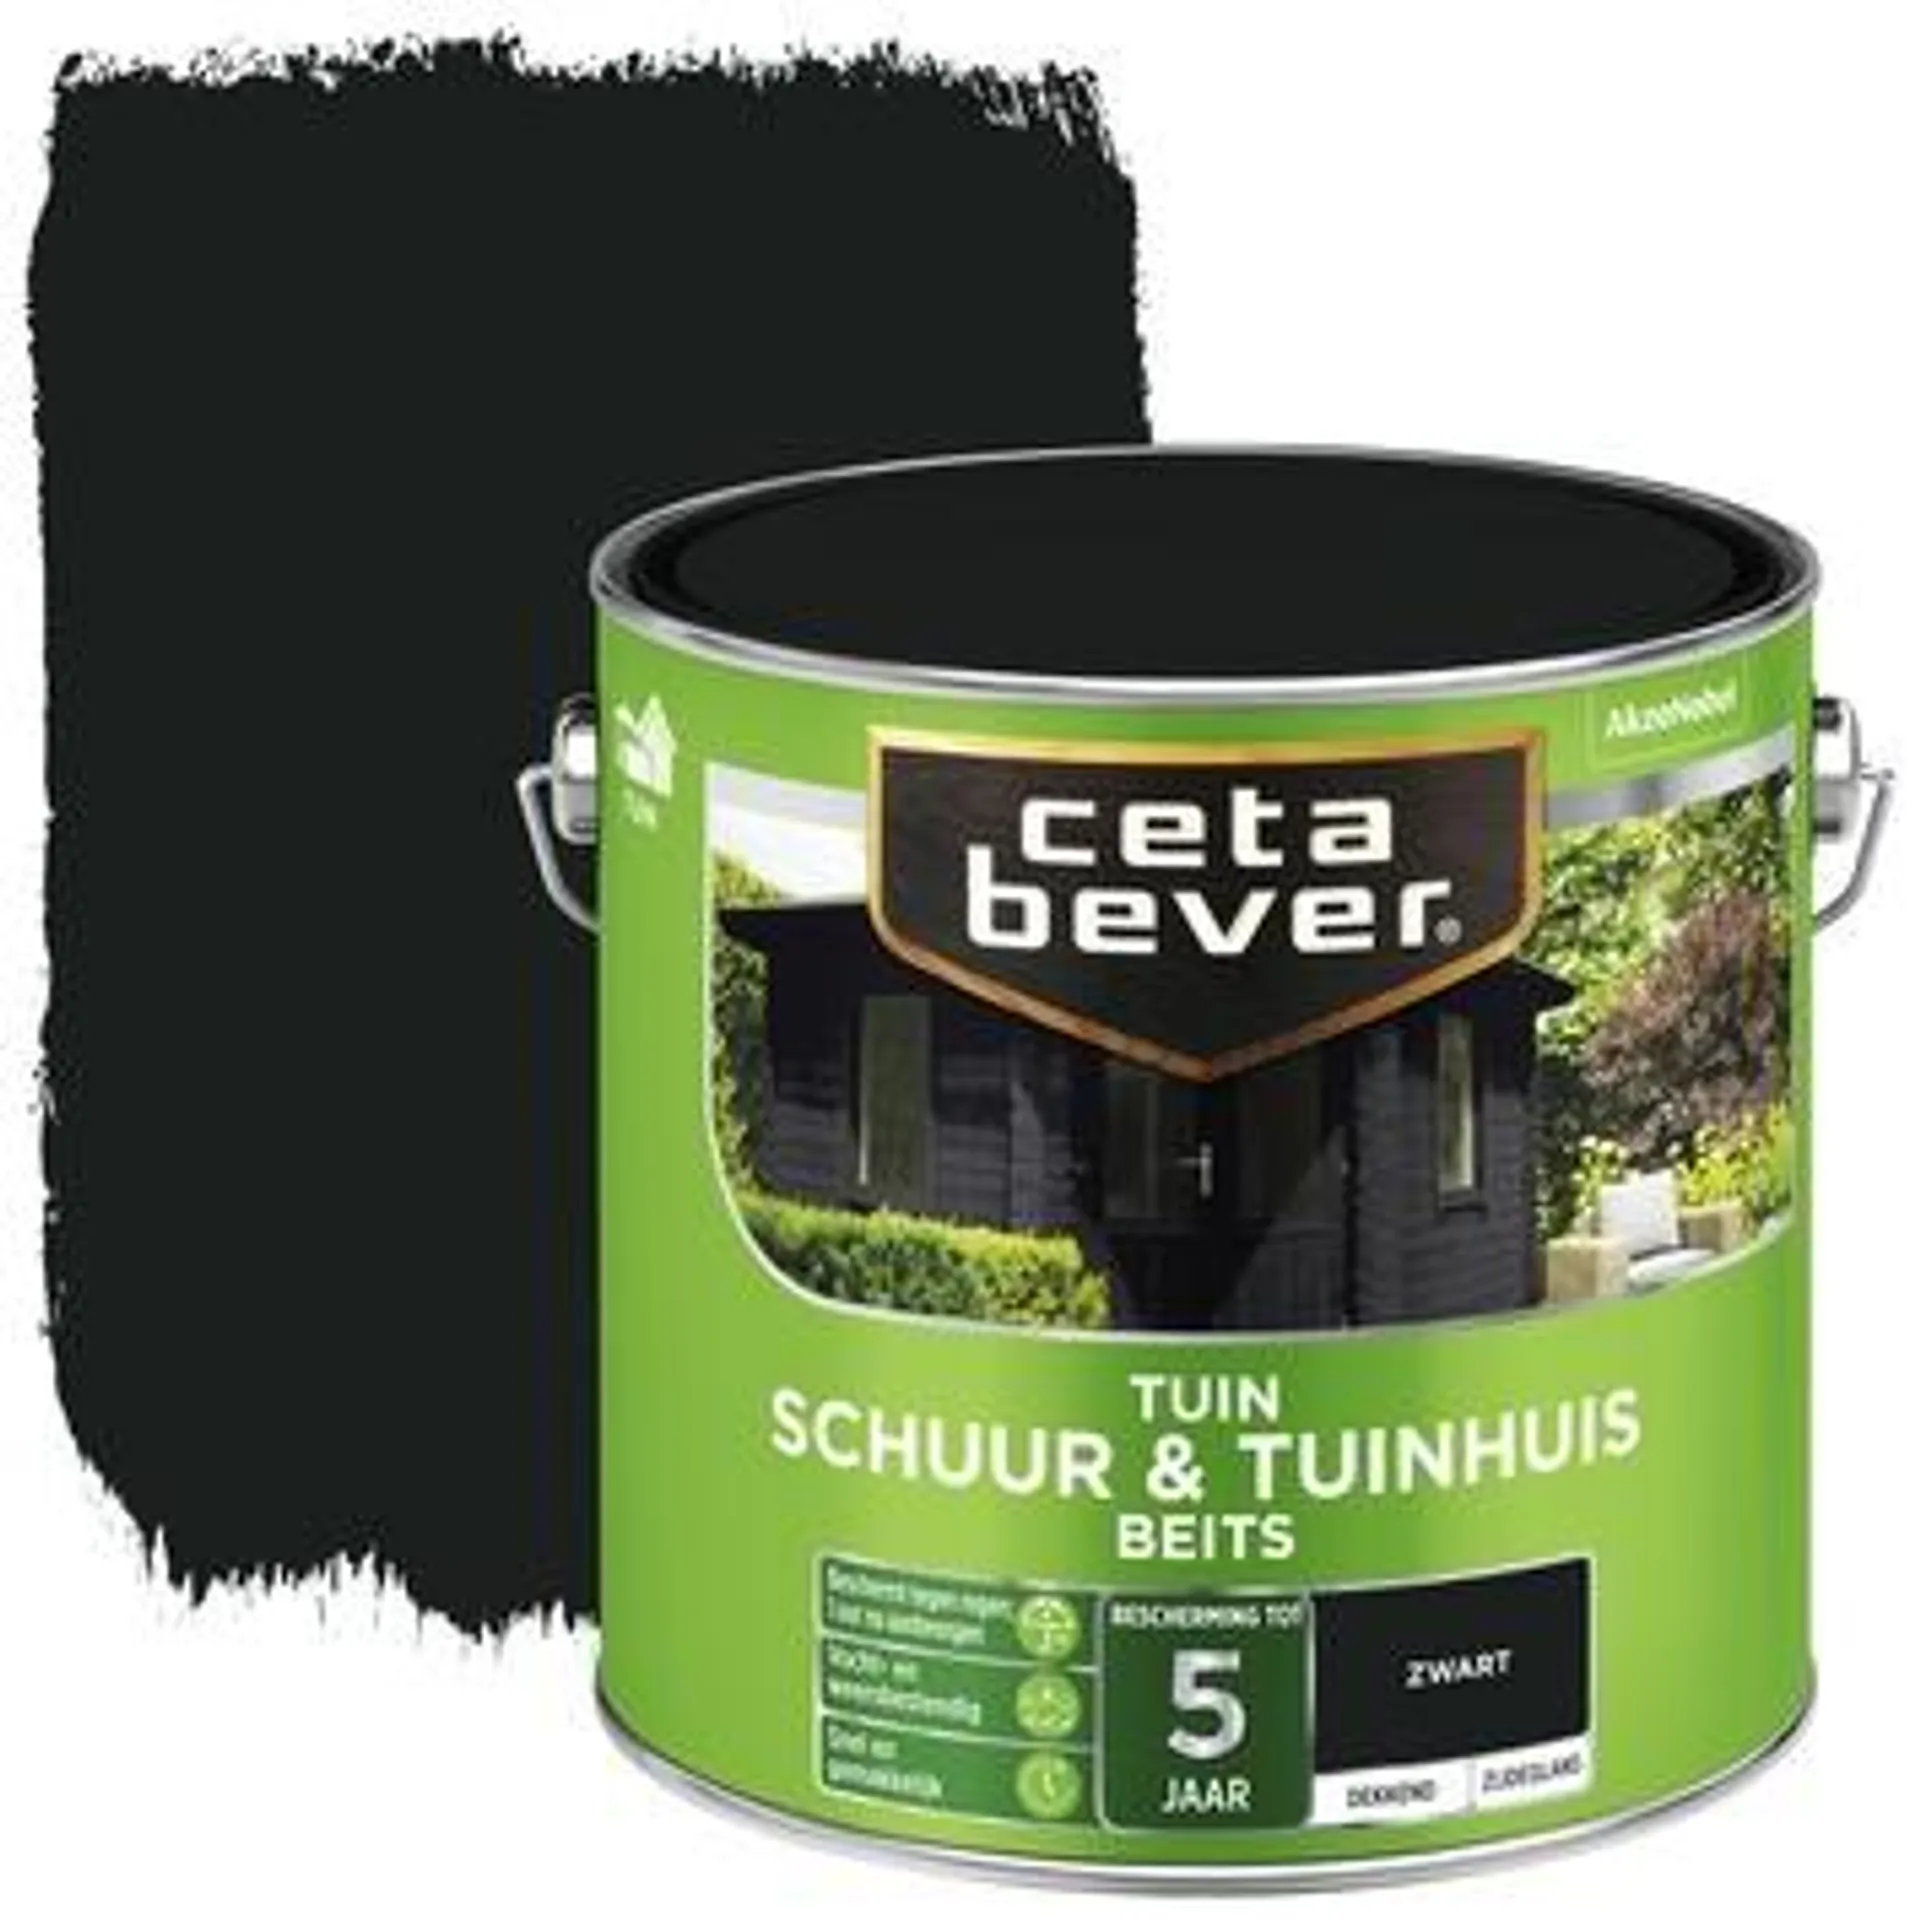 CetaBever Tuinbeits Schuur & Tuinhuis dekkend zwart zijdeglans 2,5 L